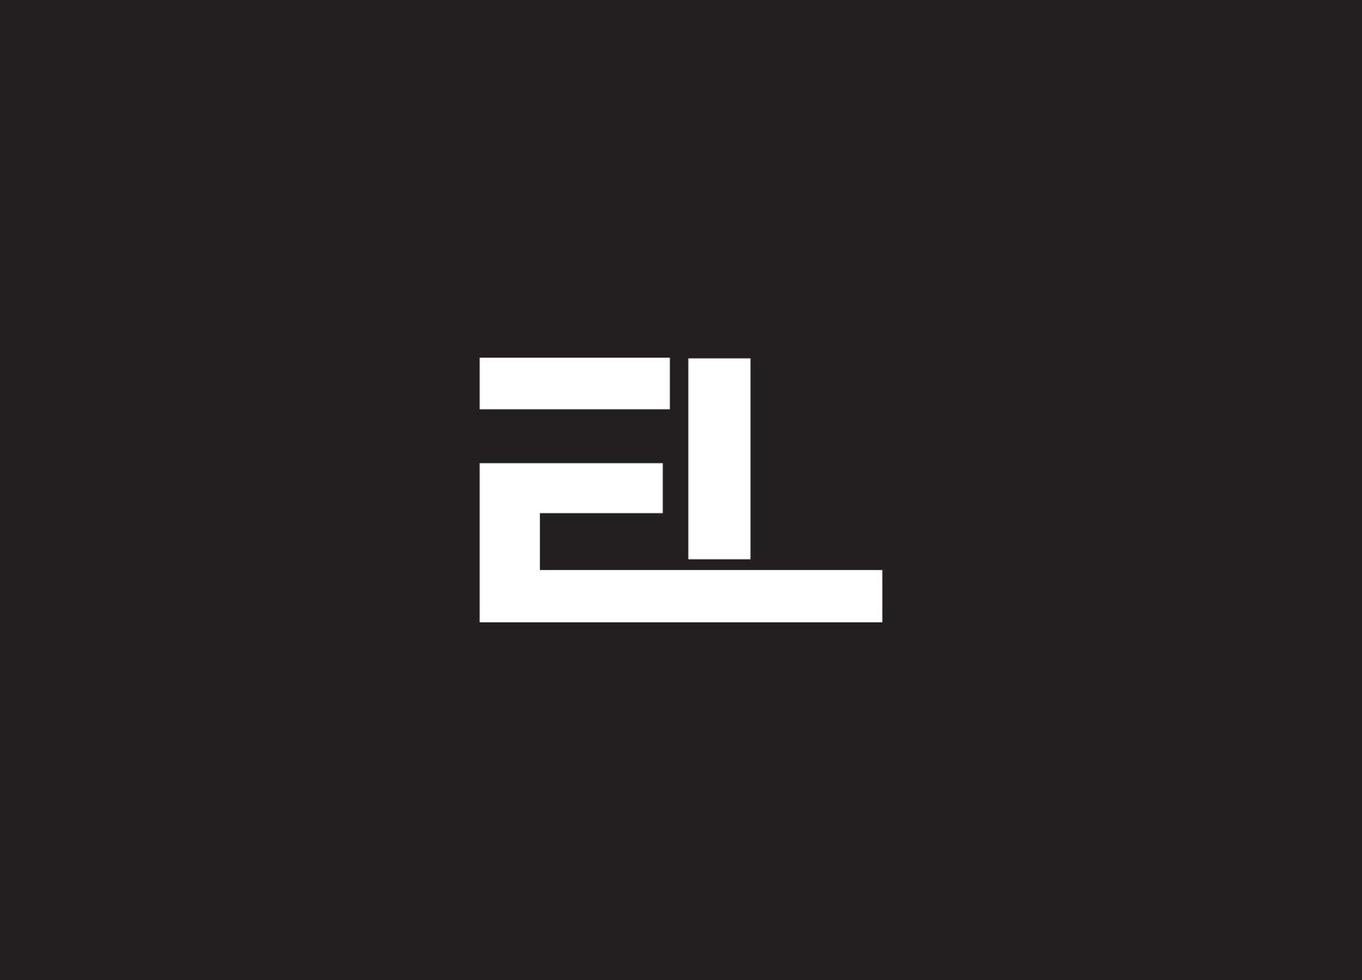 conception du logo el et logo de l'entreprise vecteur